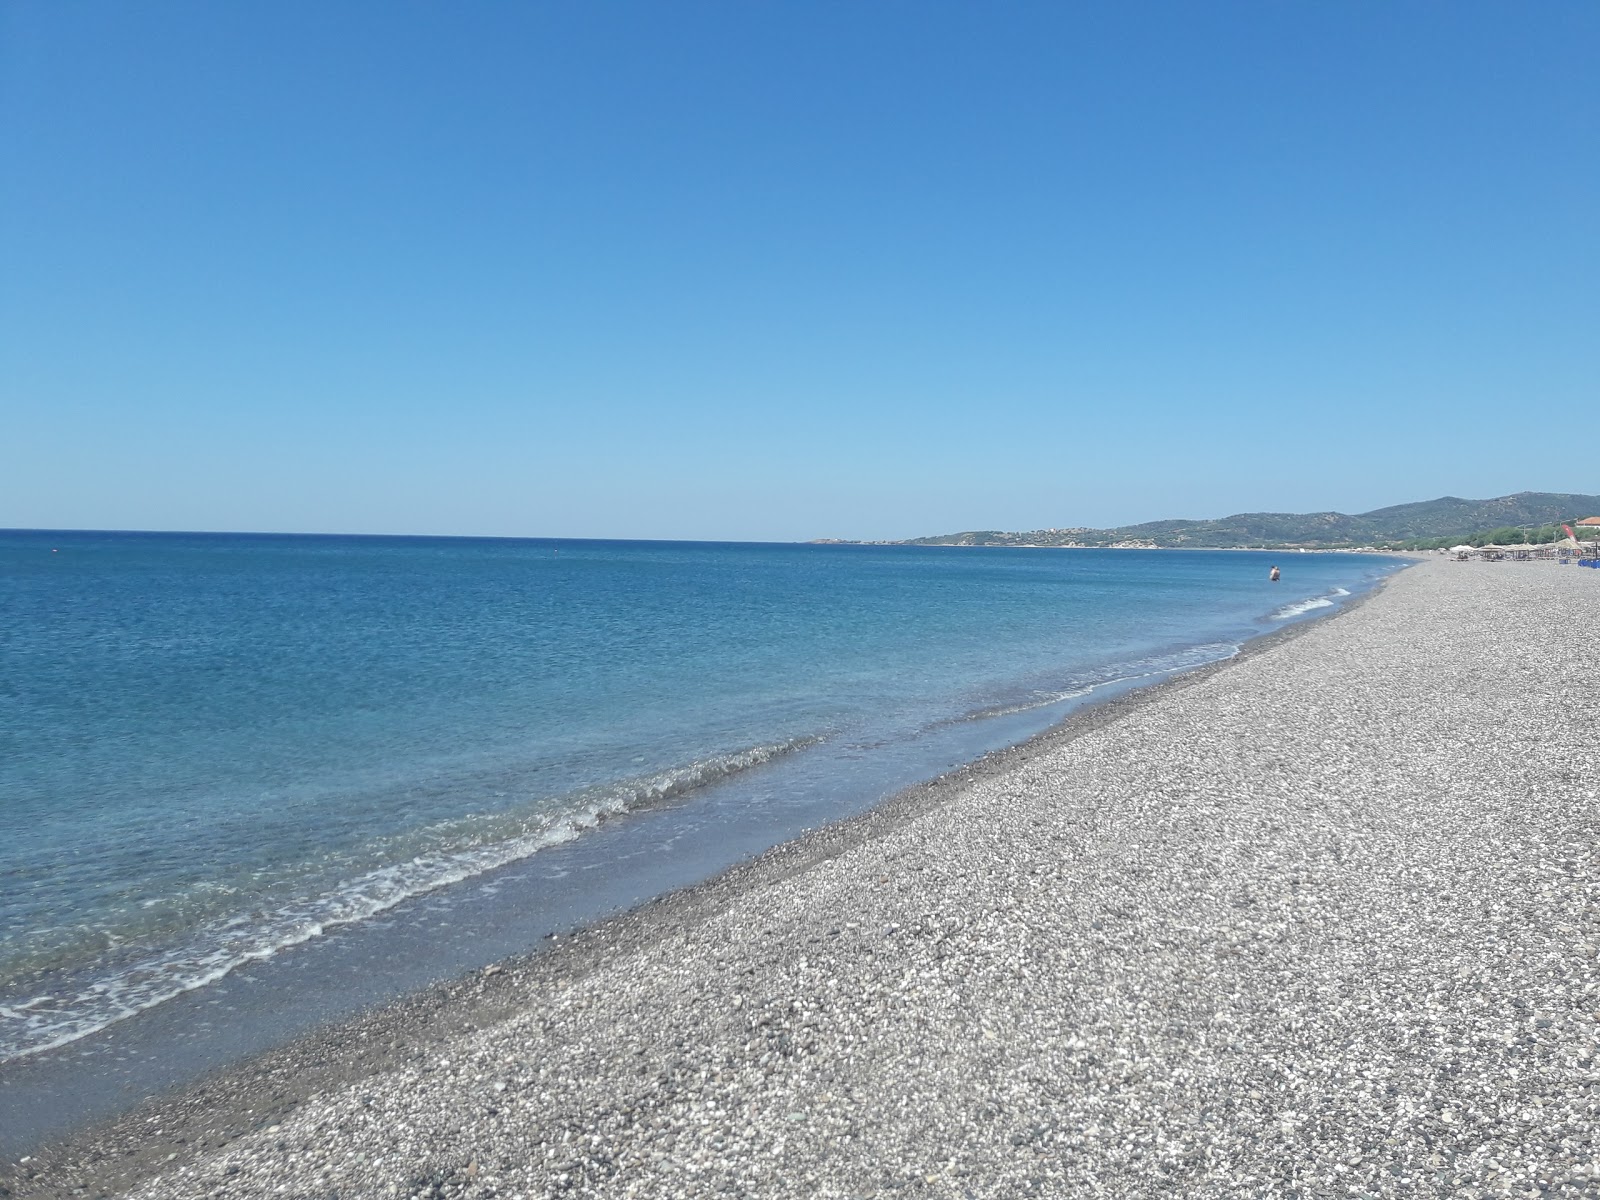 Fotografie cu Vatera beach cu o suprafață de apa pură turcoaz